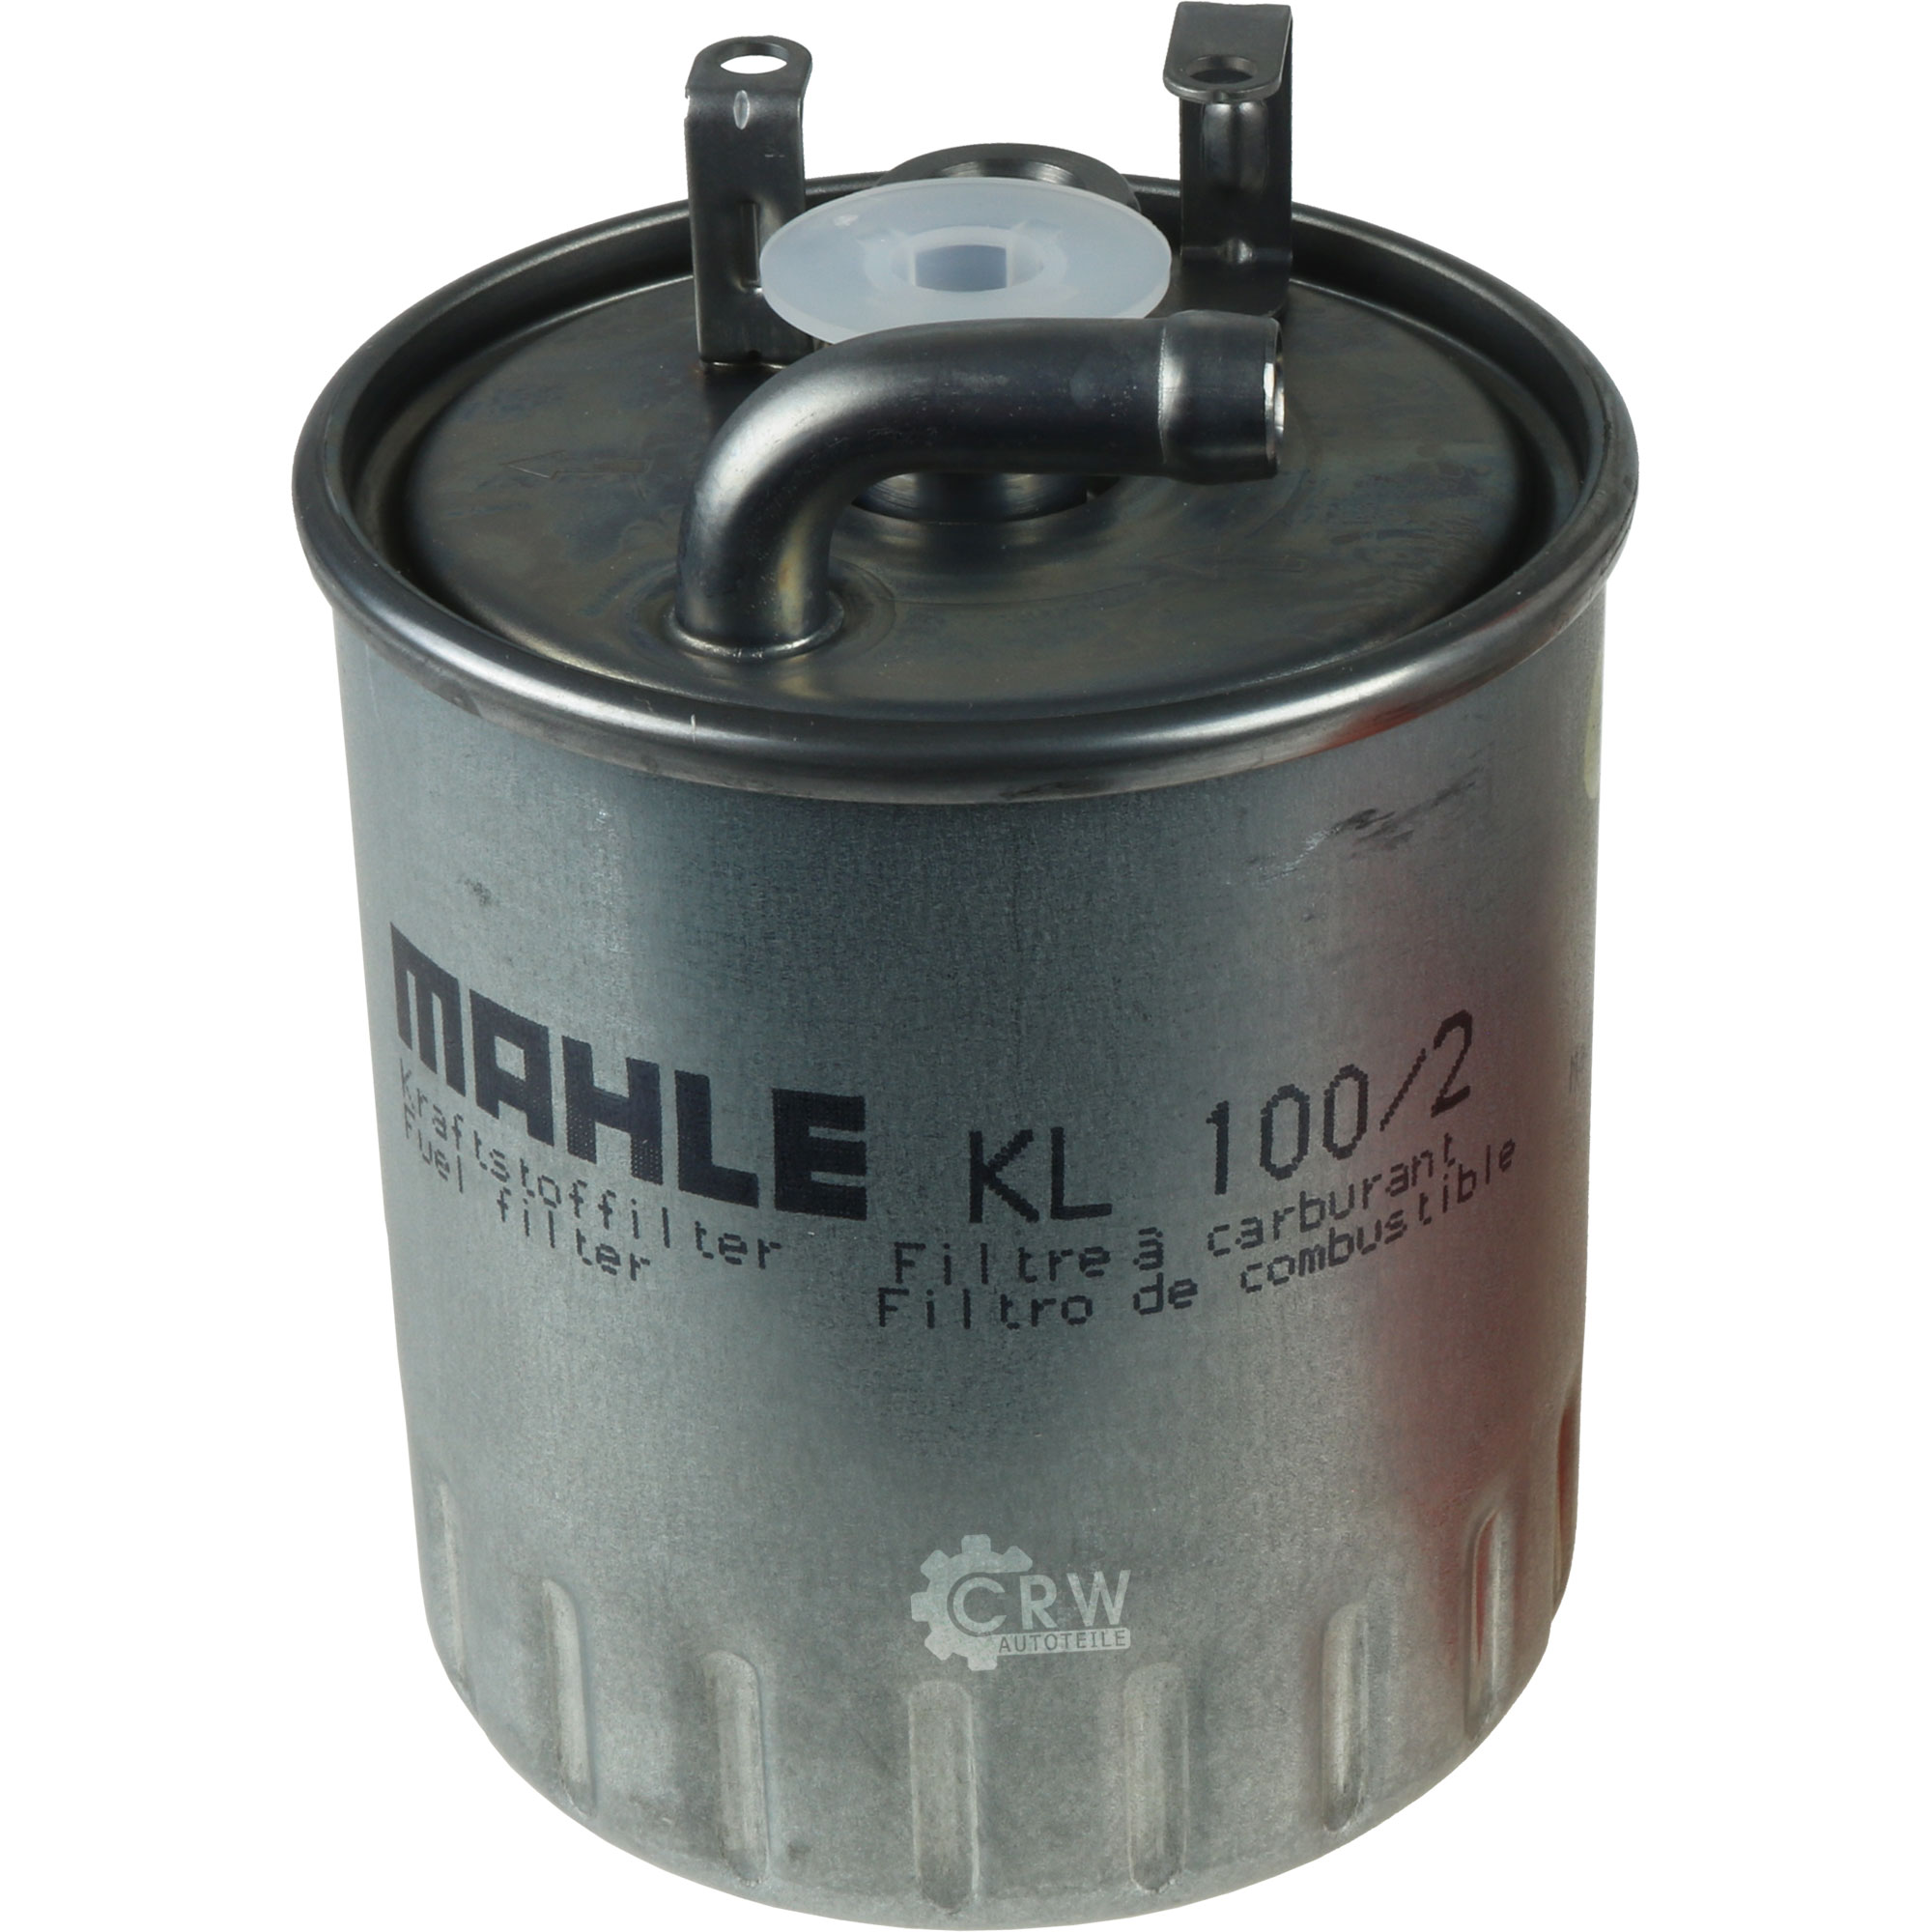 MAHLE Kraftstofffilter KL 100/2 Fuel Filter